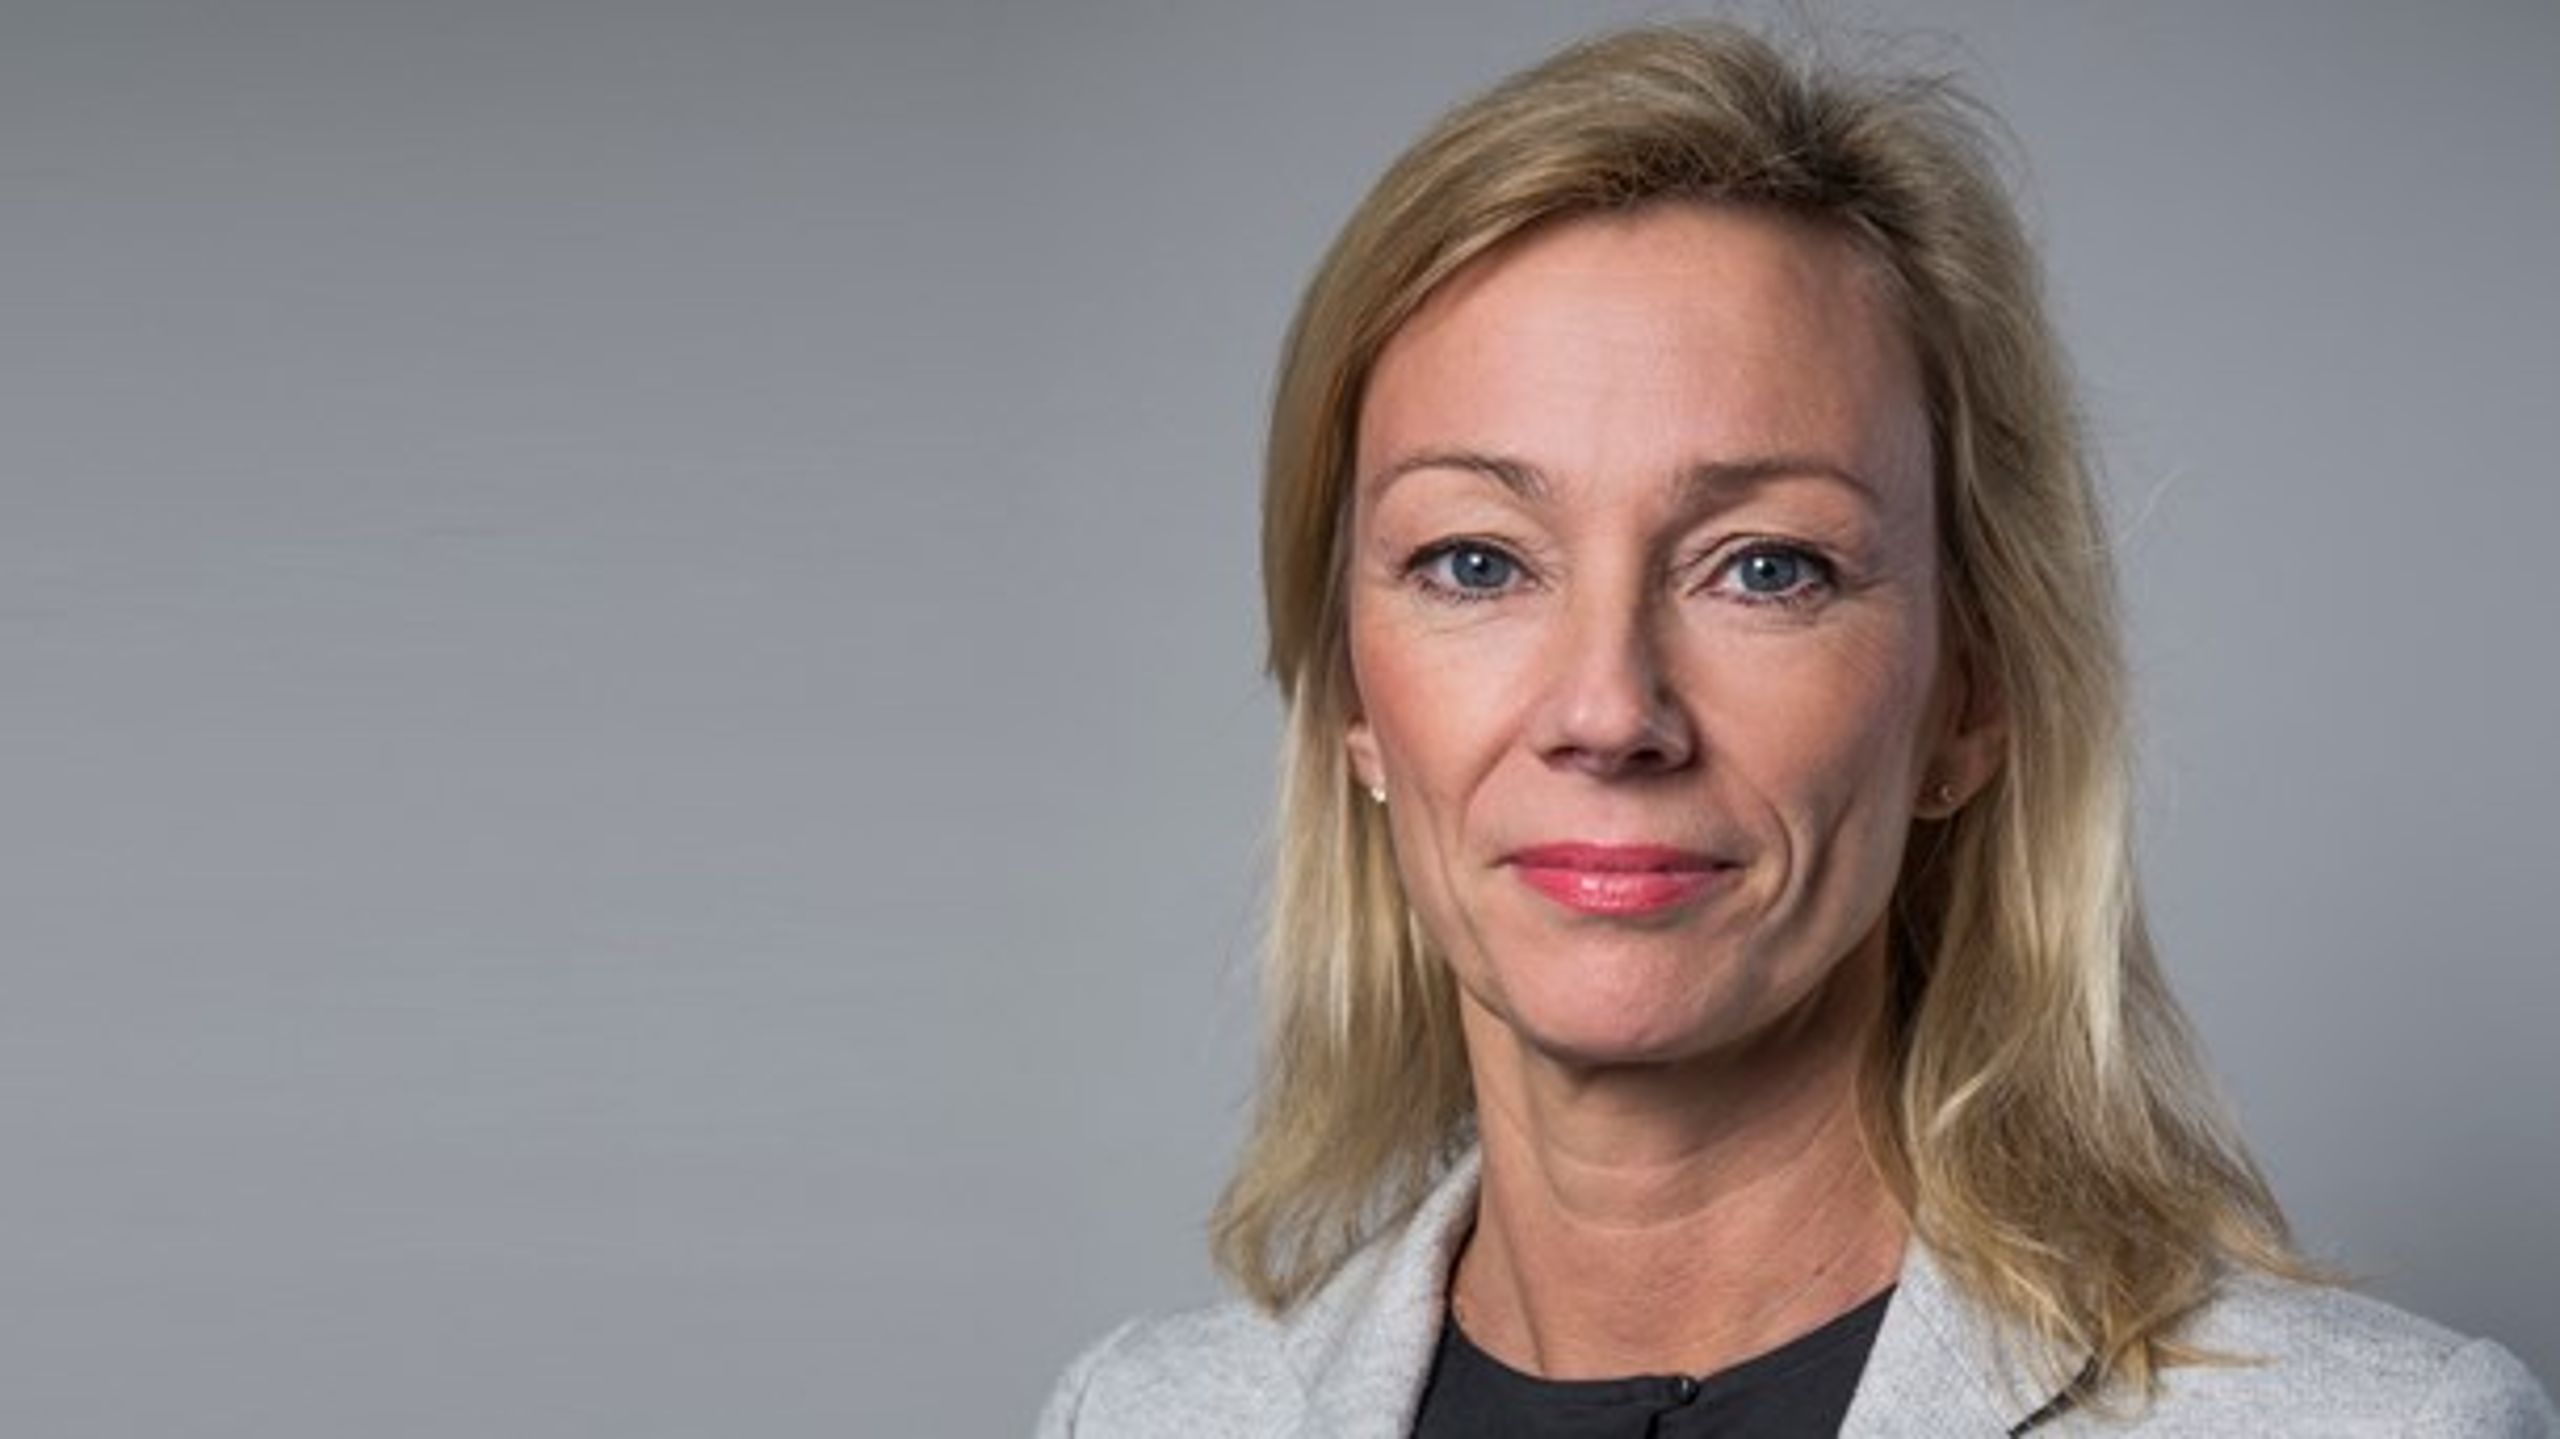 Statssekreterare Karolina Ekholm&nbsp;tycker att “någon borde sätta sig ned och göra en mer grundlig analys” av reformer på bostadsmarknaden&nbsp;– men kan inte säga vem.